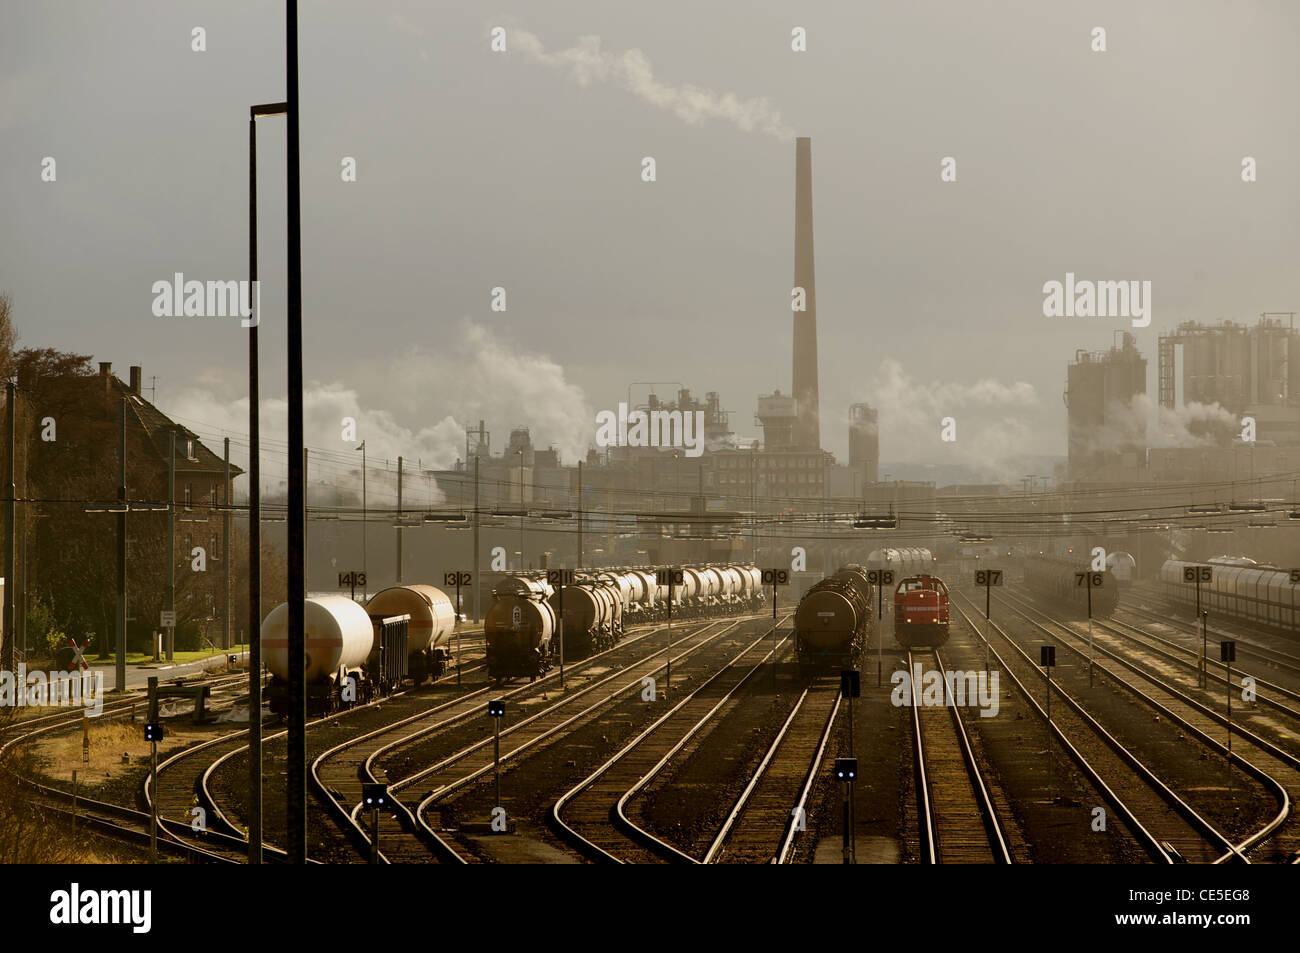 Gare de triage ferroviaire à une grande usine chimique, de l'Allemagne. Banque D'Images